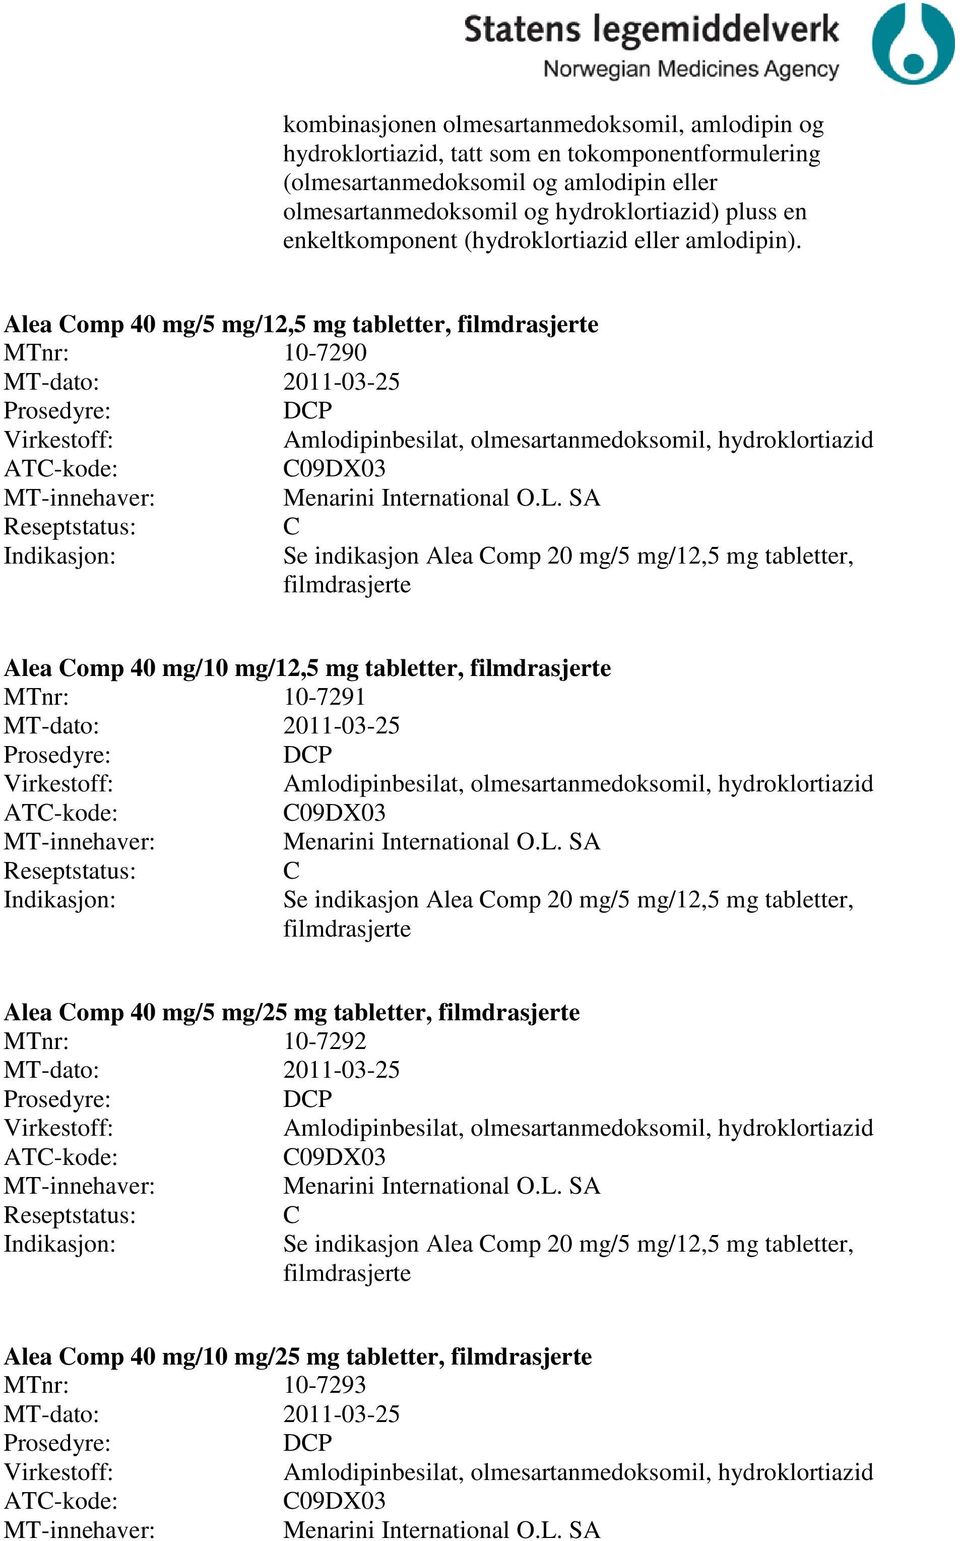 Alea omp 40 mg/5 mg/12,5 mg tabletter, filmdrasjerte MTnr: 10-7290 MT-dato: 2011-03-25 DP Amlodipinbesilat, olmesartanmedoksomil, hydroklortiazid 09DX03 Menarini International O.L.